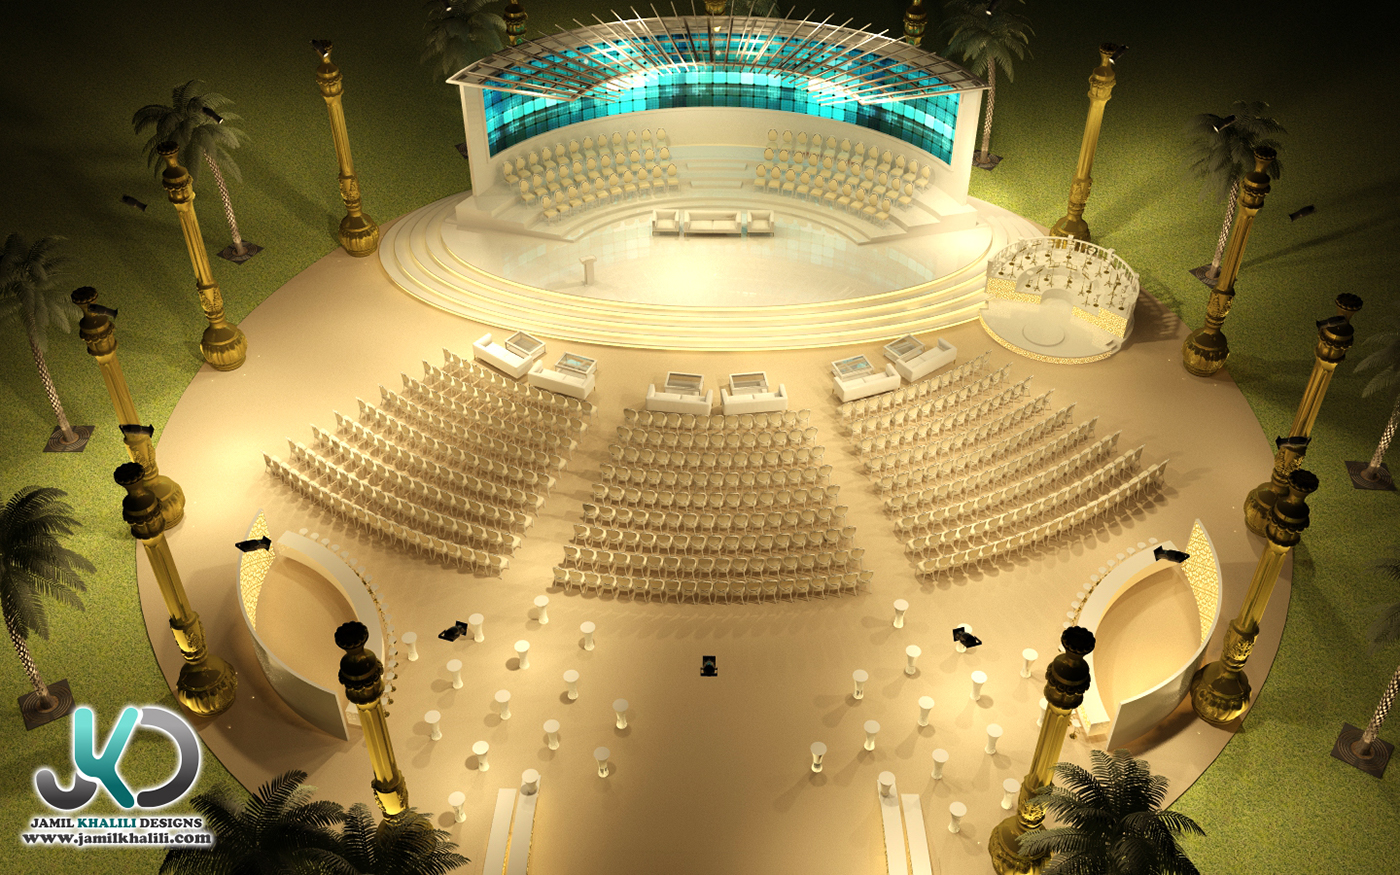 3d interior designer 3d designer 3d visualizer UAE dubai 3d visualizer dubai Abu Dhabi Event Designer wedding designer stage designer